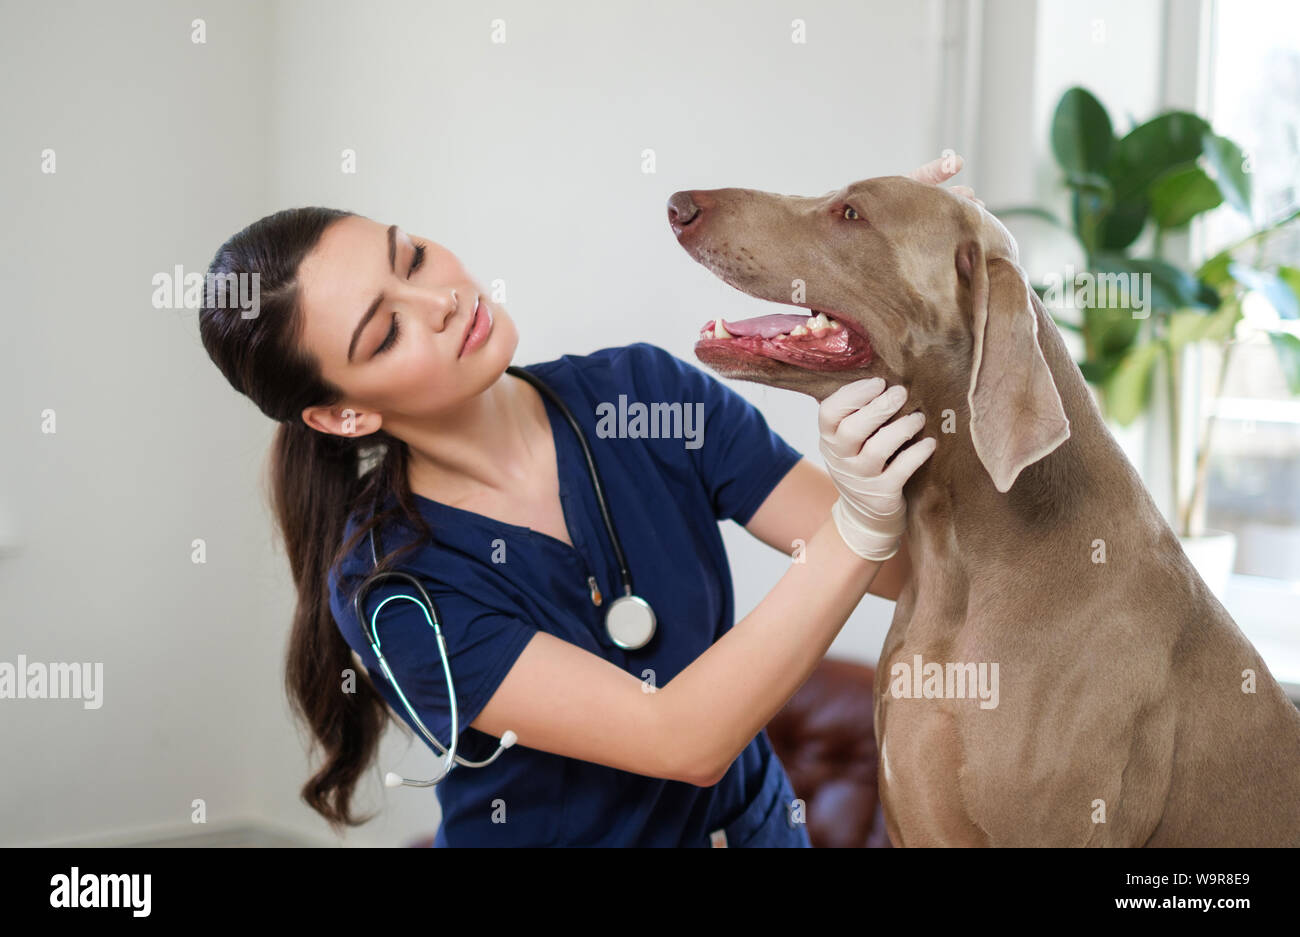 Veterinary surgeon and weimaraner dog at vet clinic Stock Photo